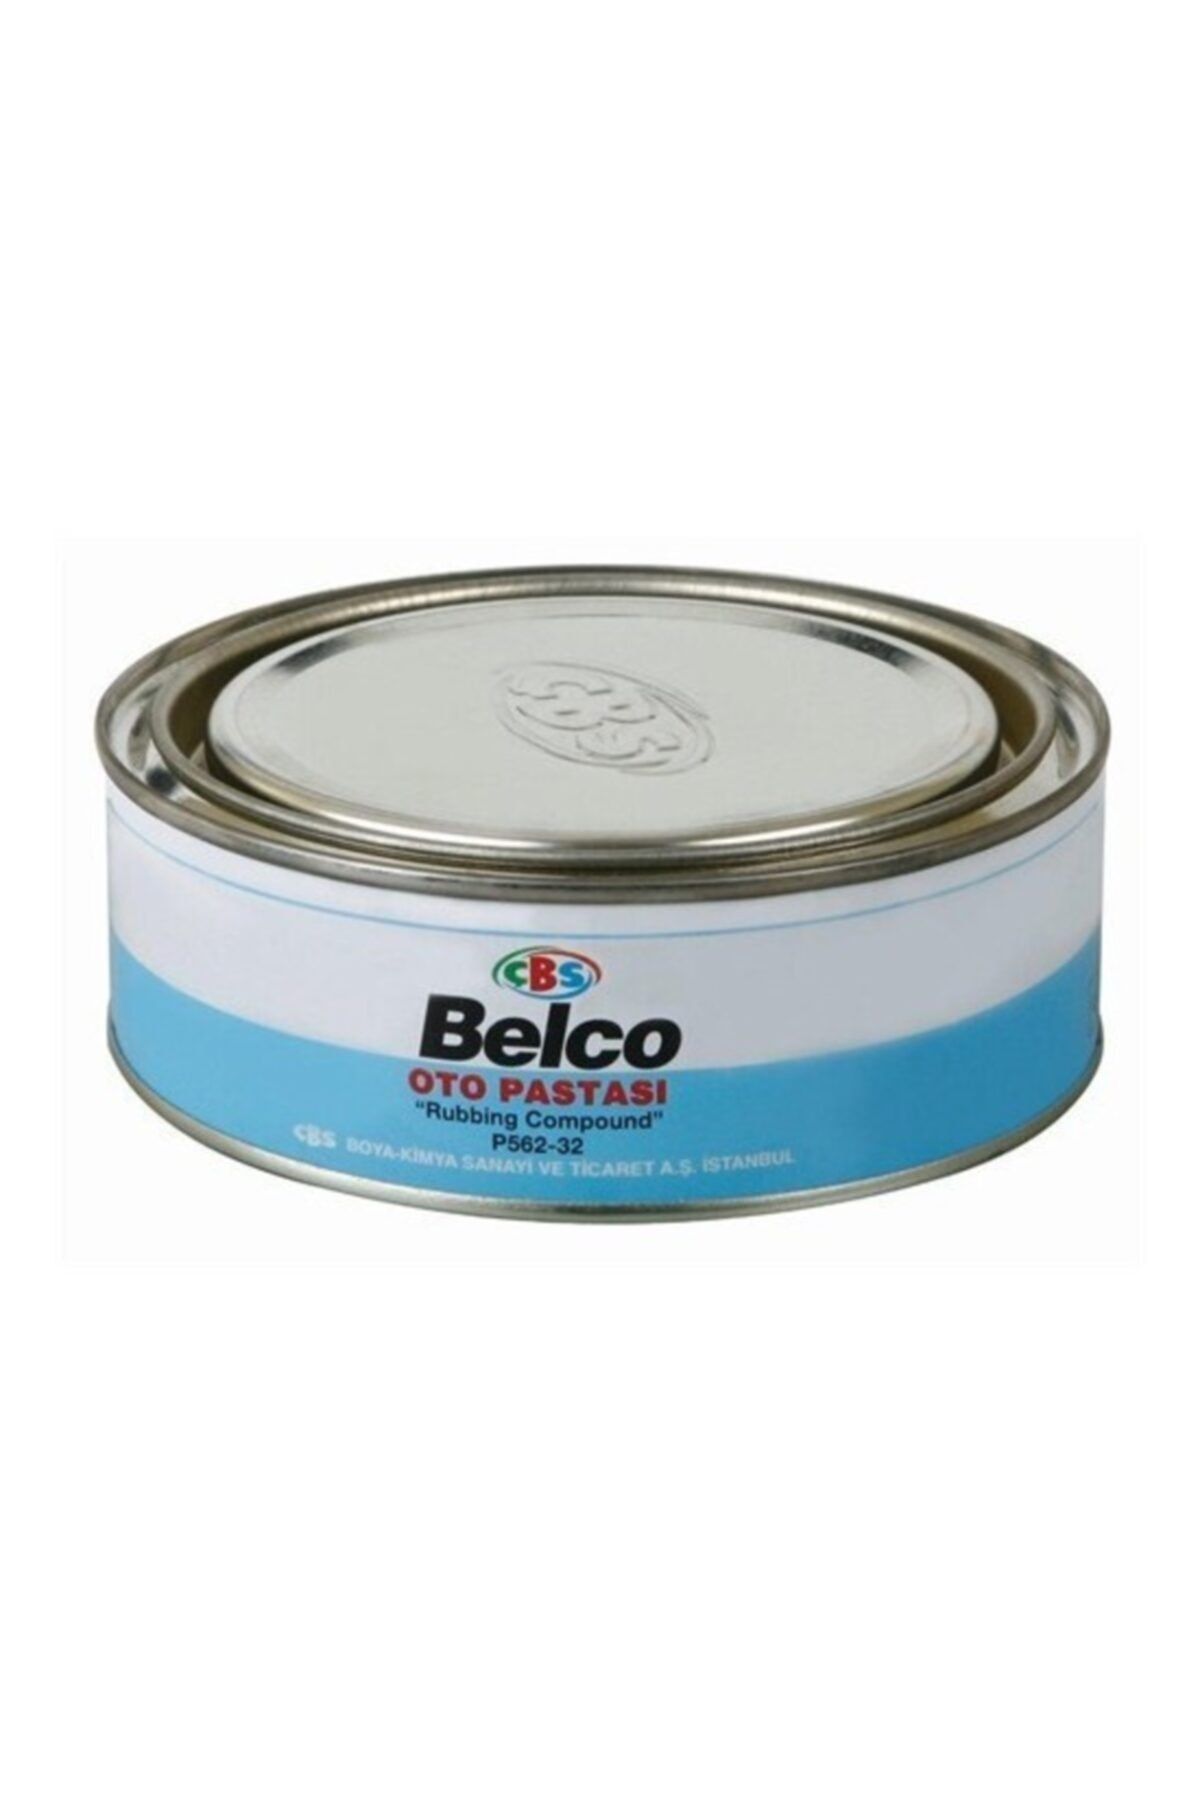 Çbs Belco Oto Pastası 1000 gr